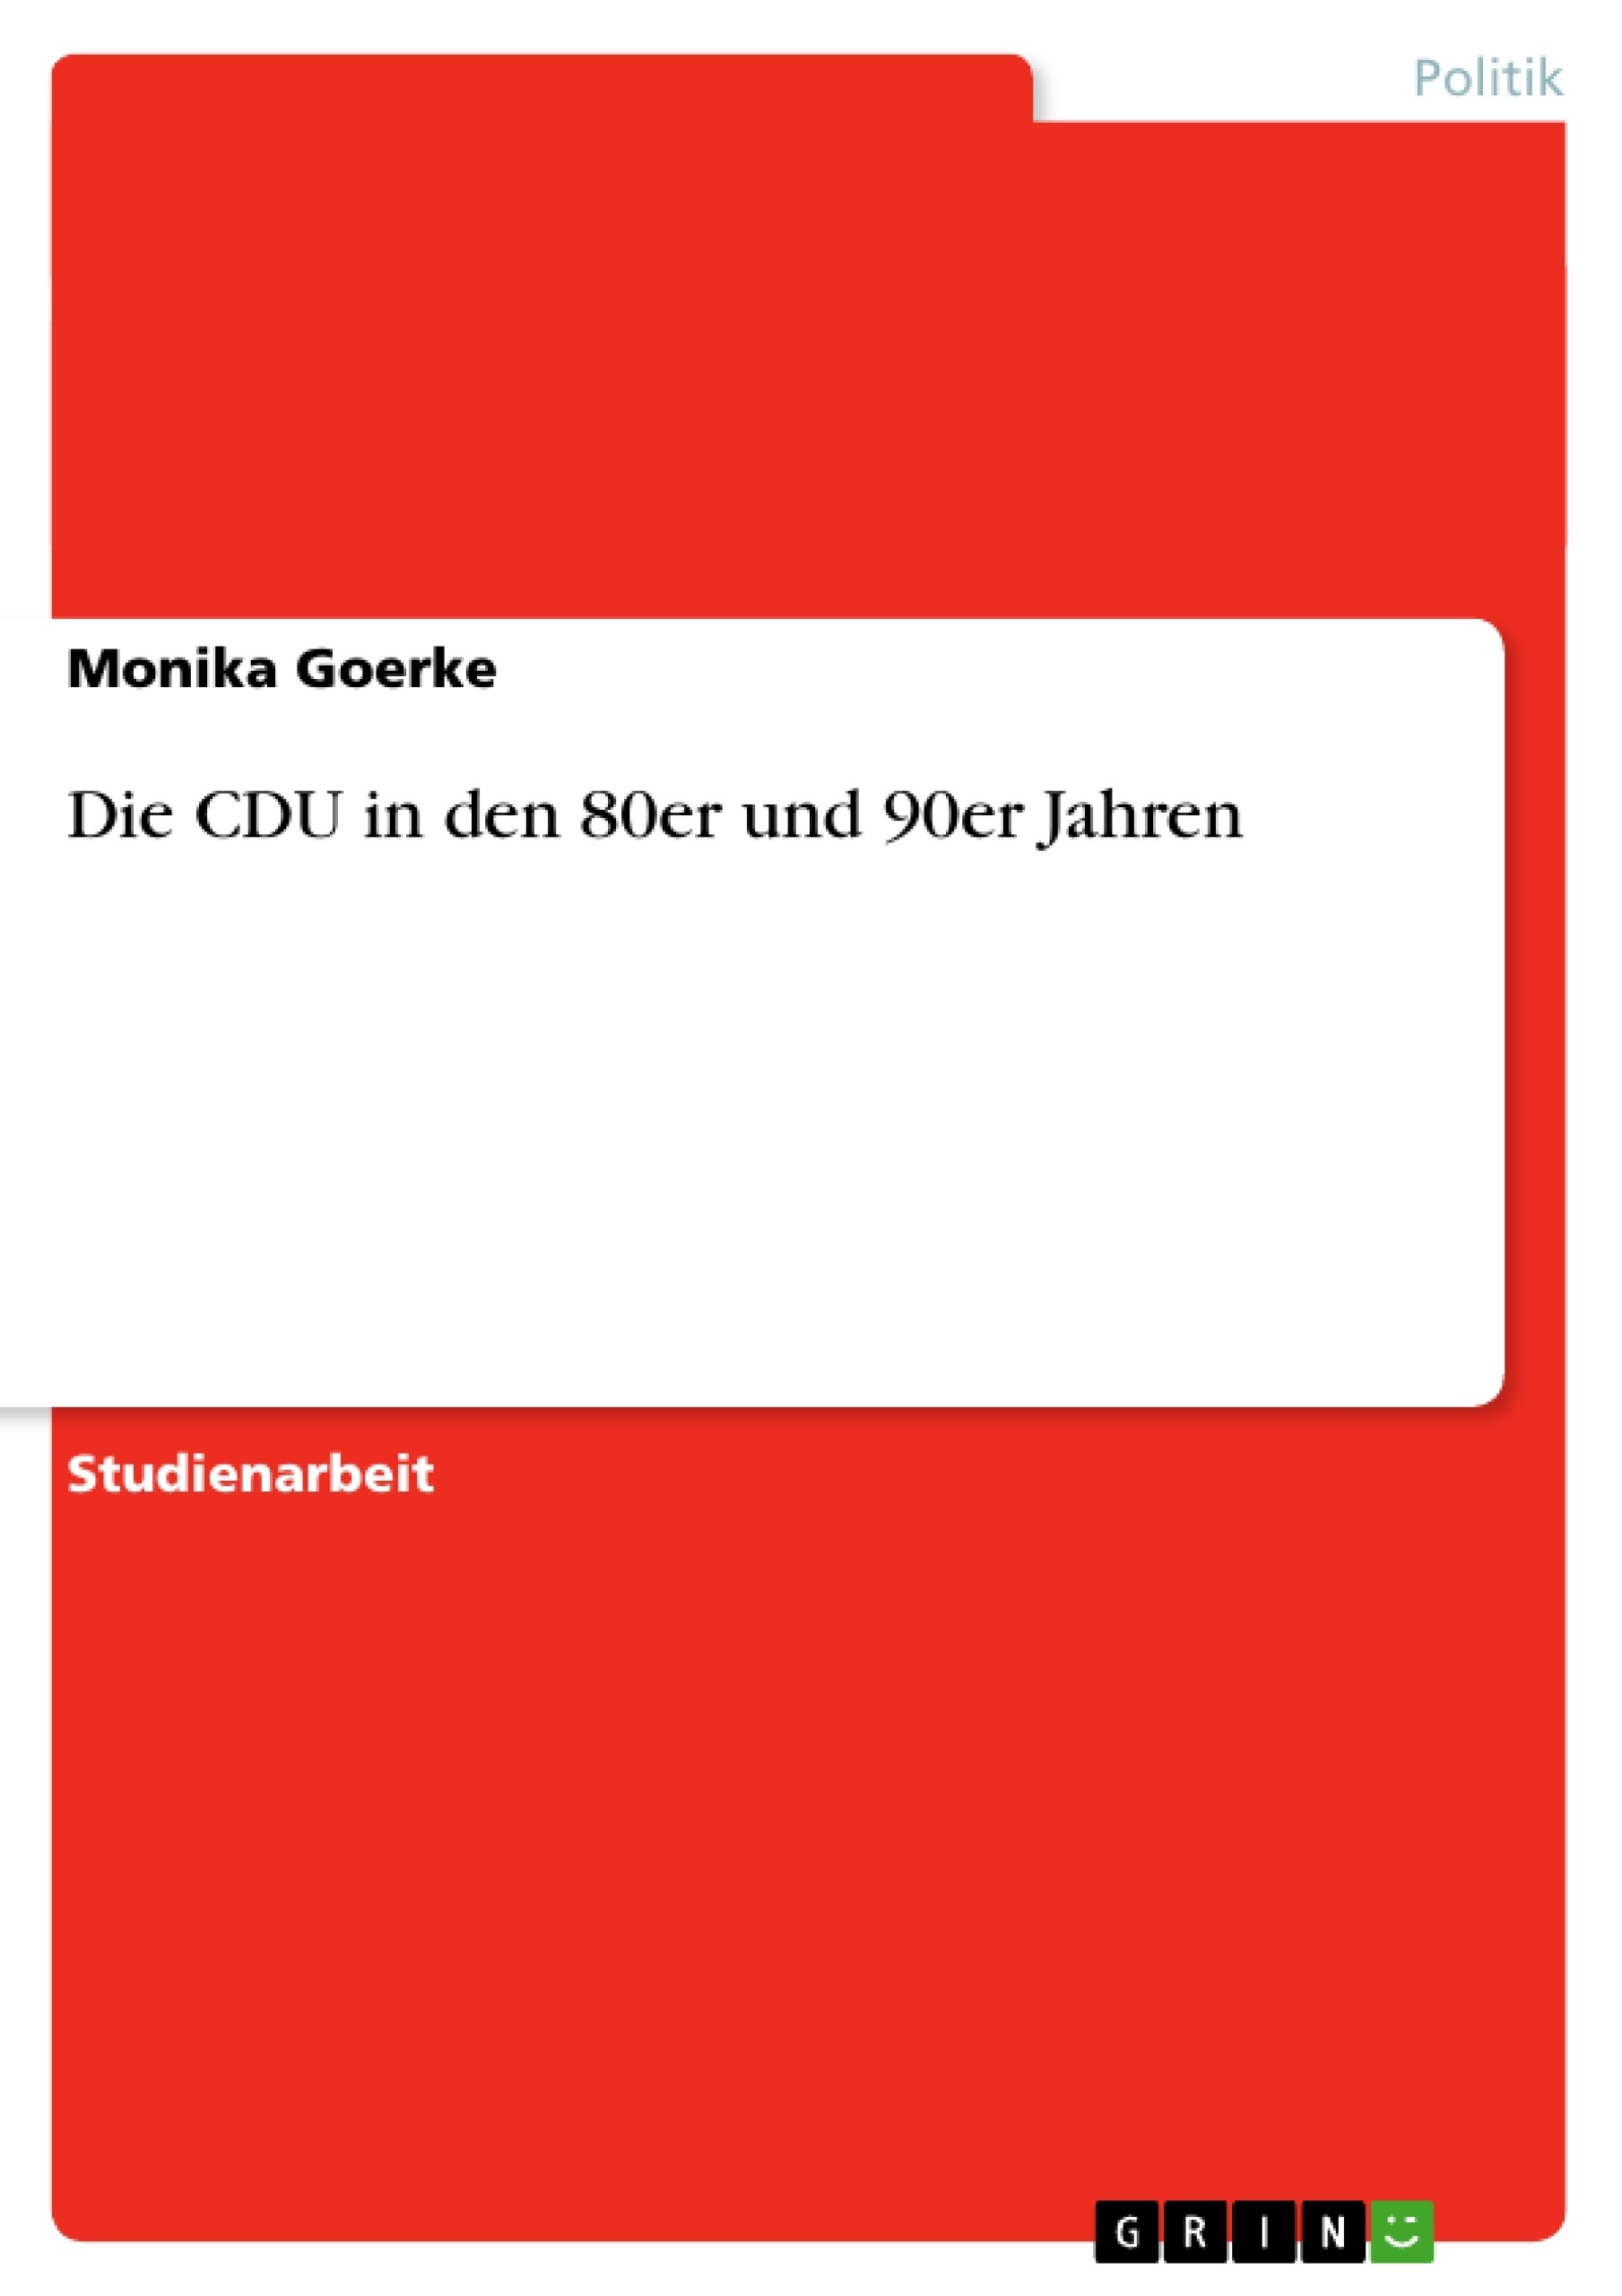 Title: Die CDU in den 80er und 90er Jahren